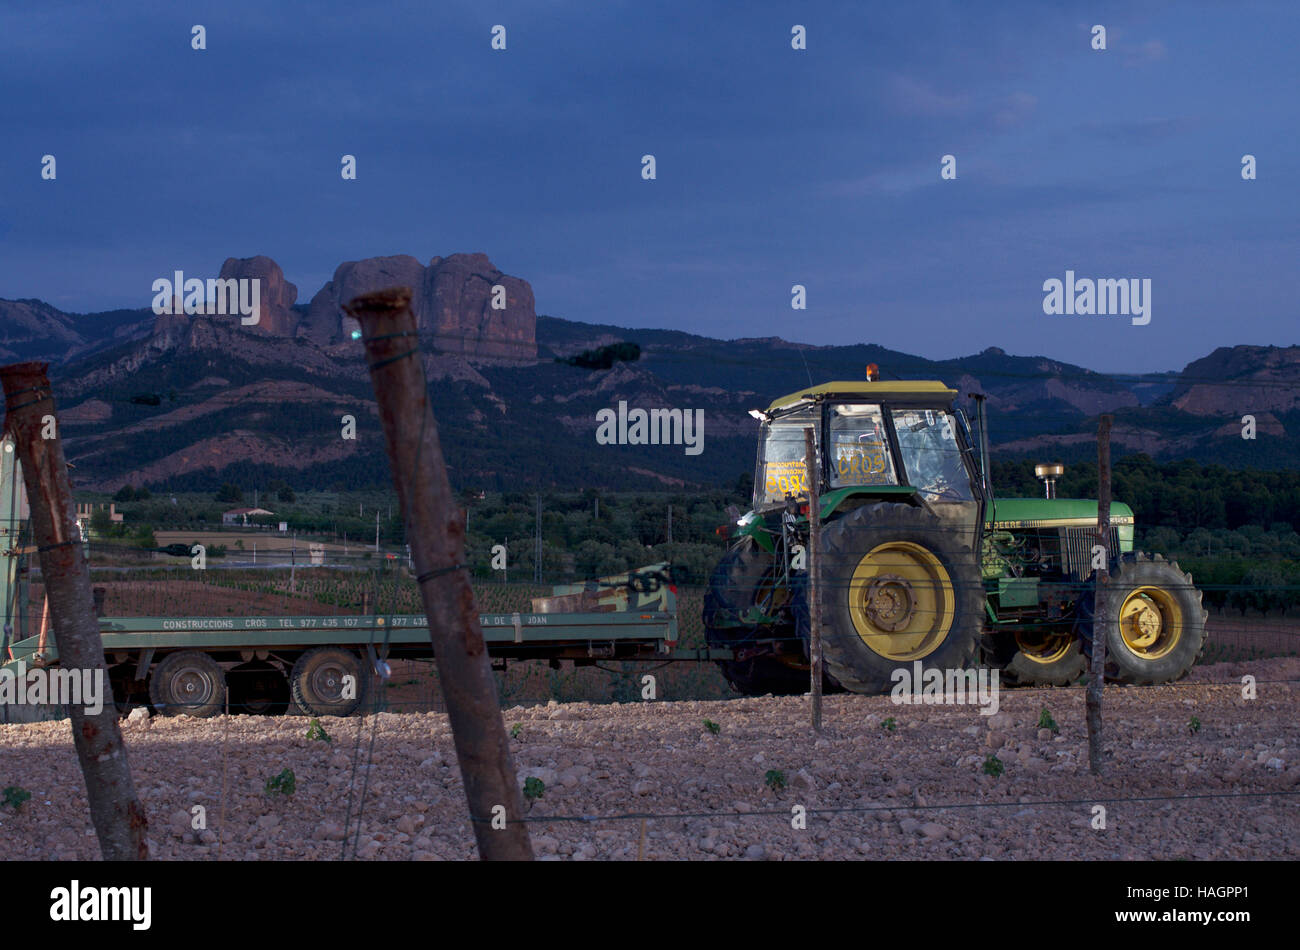 Il trattore e il rimorchio all'ombra del Roques de Benet, Els porte parco naturale, Spagna Foto Stock